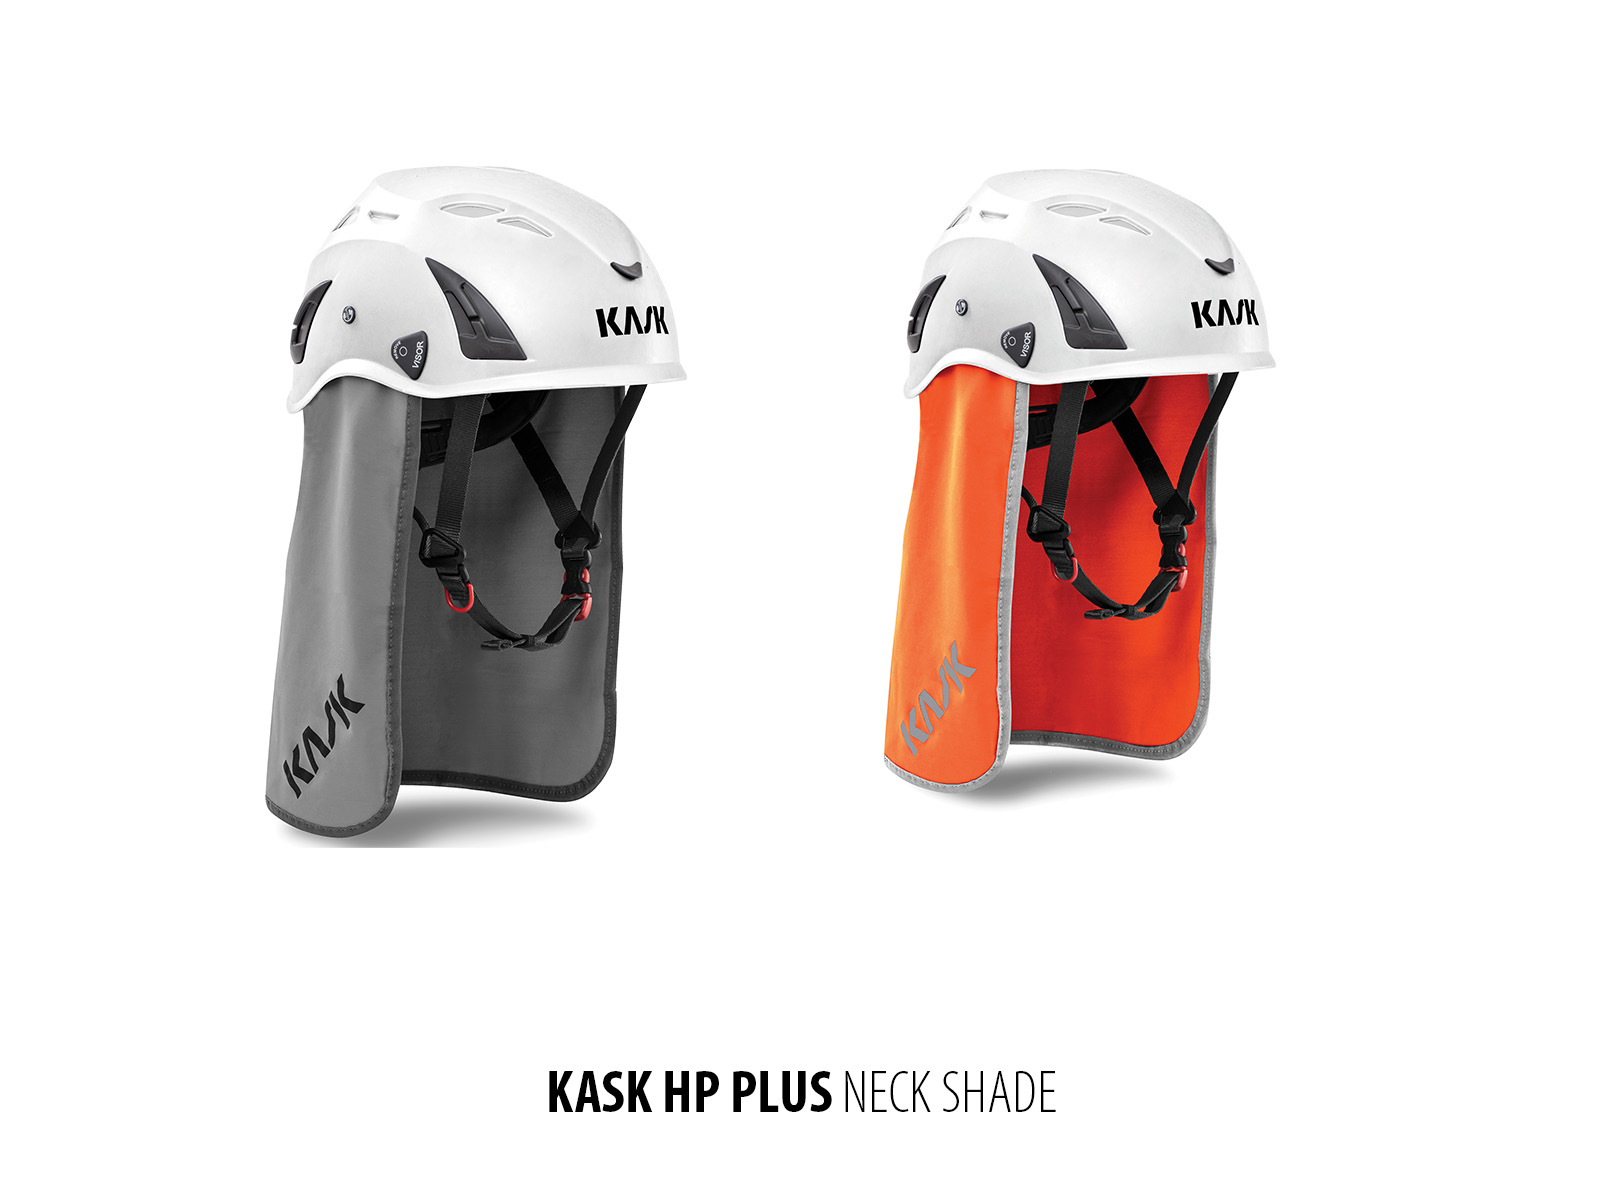 KASK-HP-Plus-neckshades.jpg